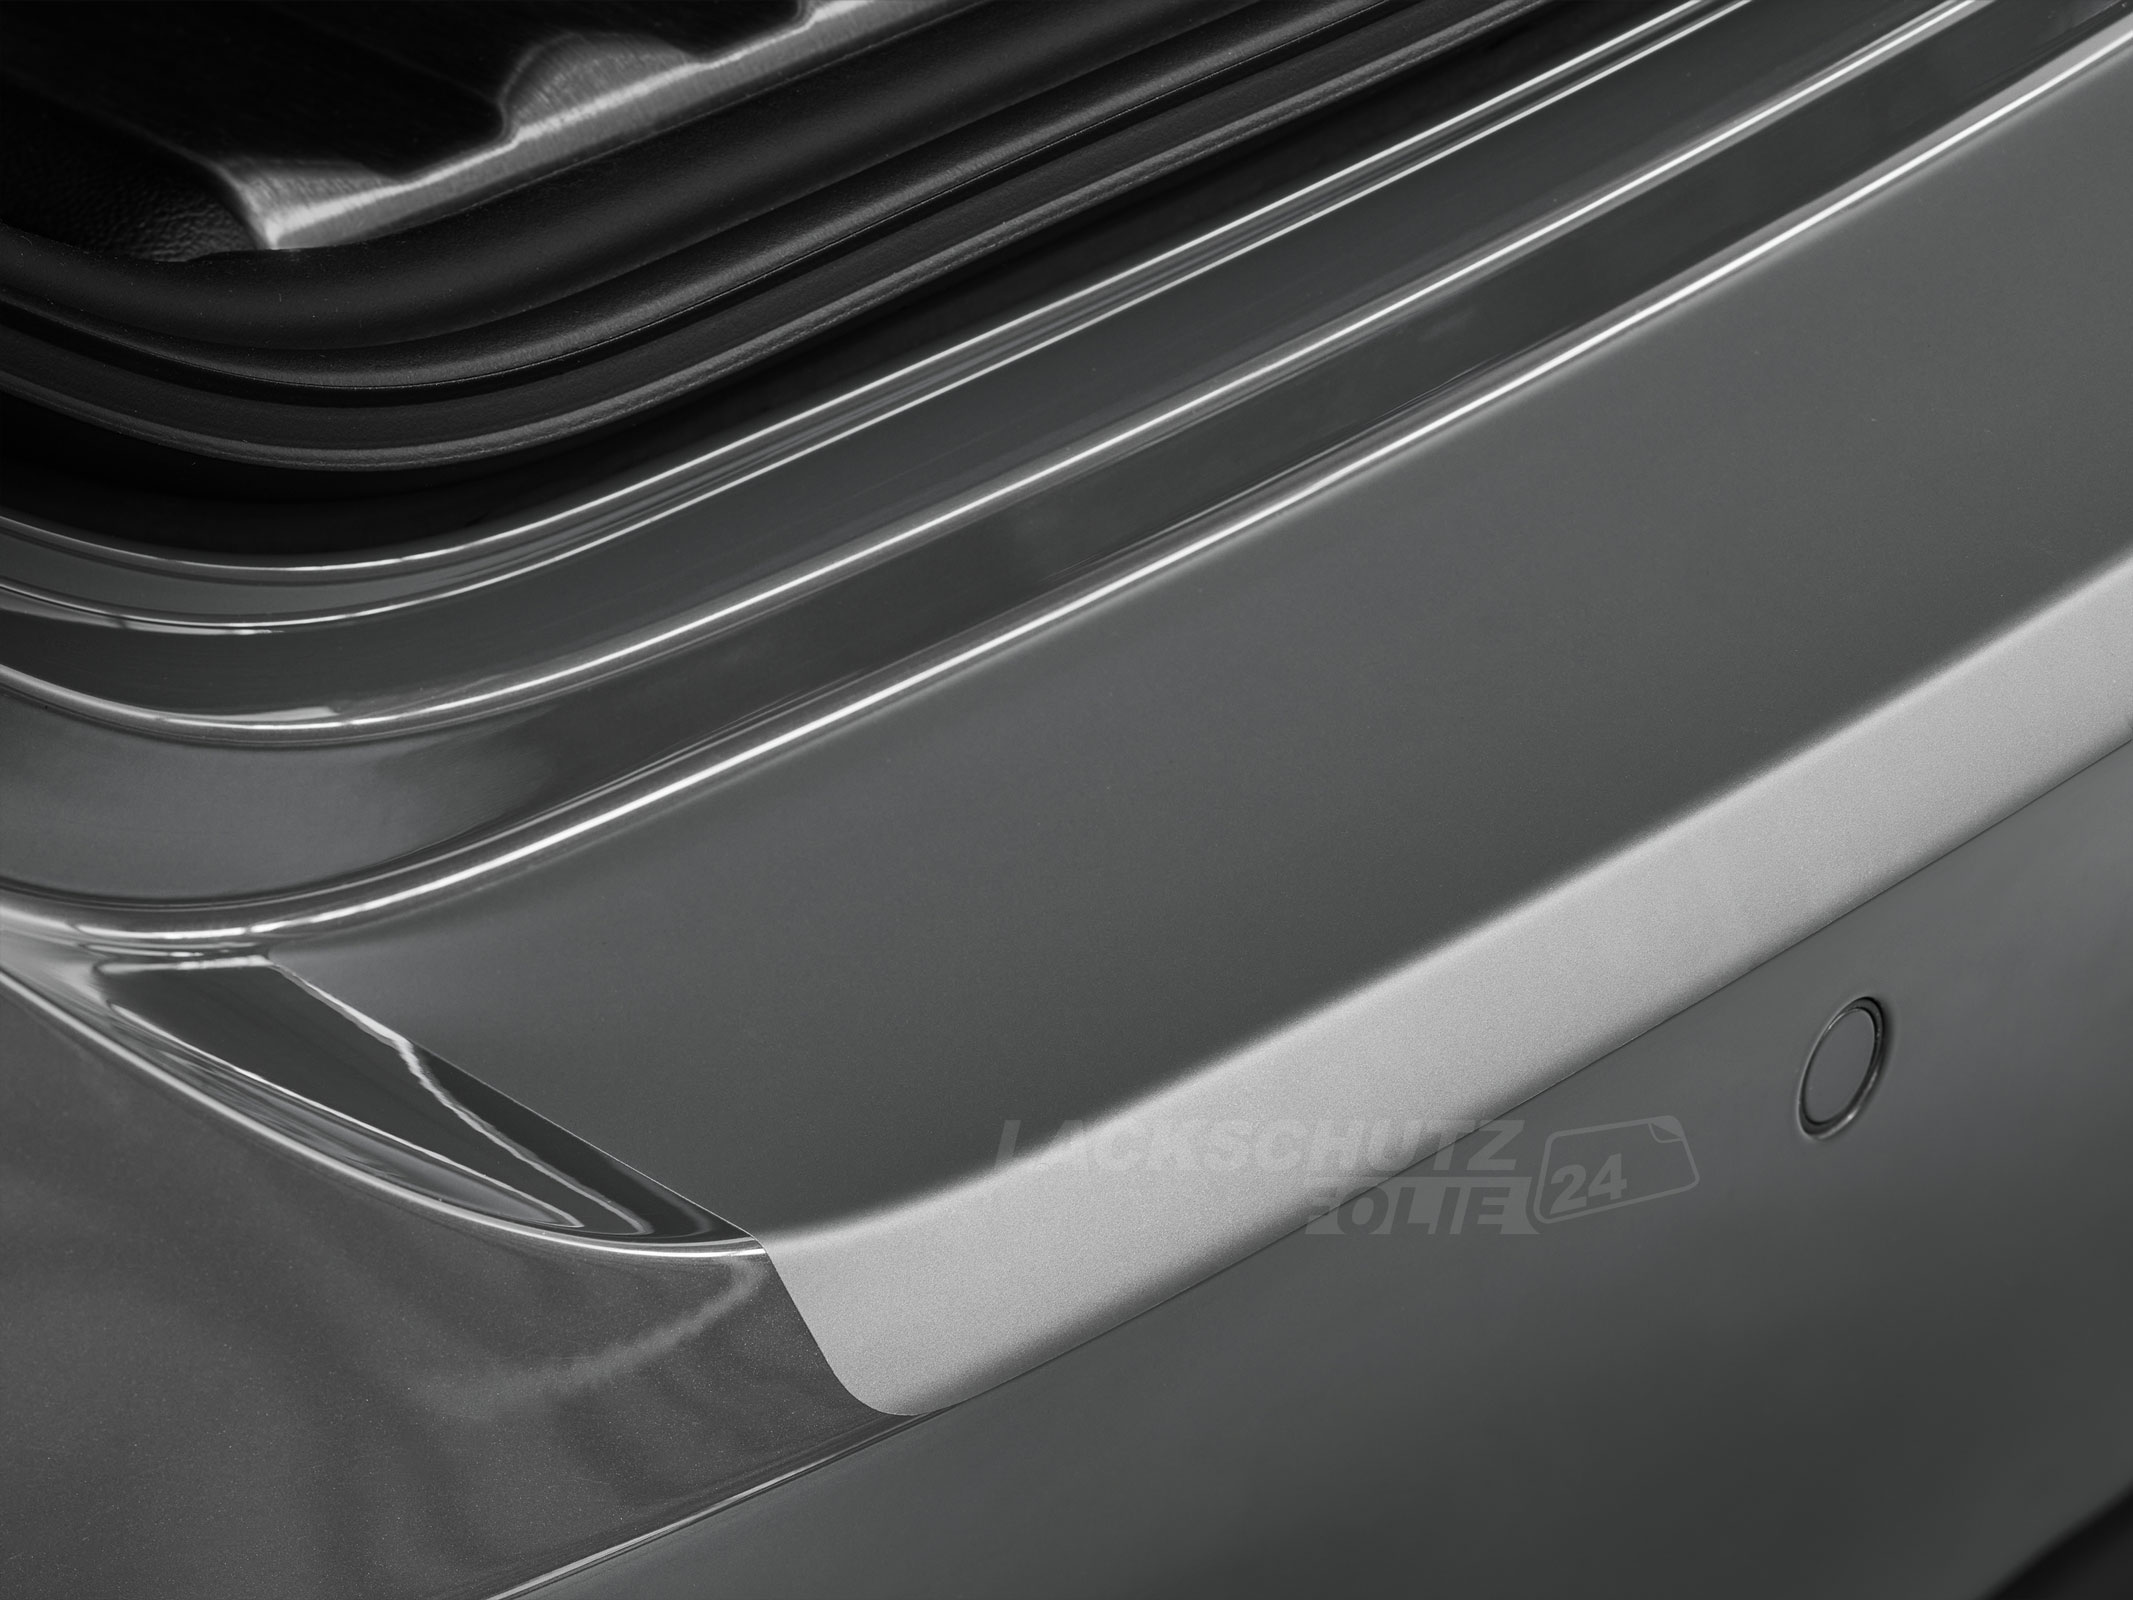 Ladekantenschutzfolie - Transparent Glatt MATT 110 µm stark  für Hyundai Getz bis BJ 10/2005